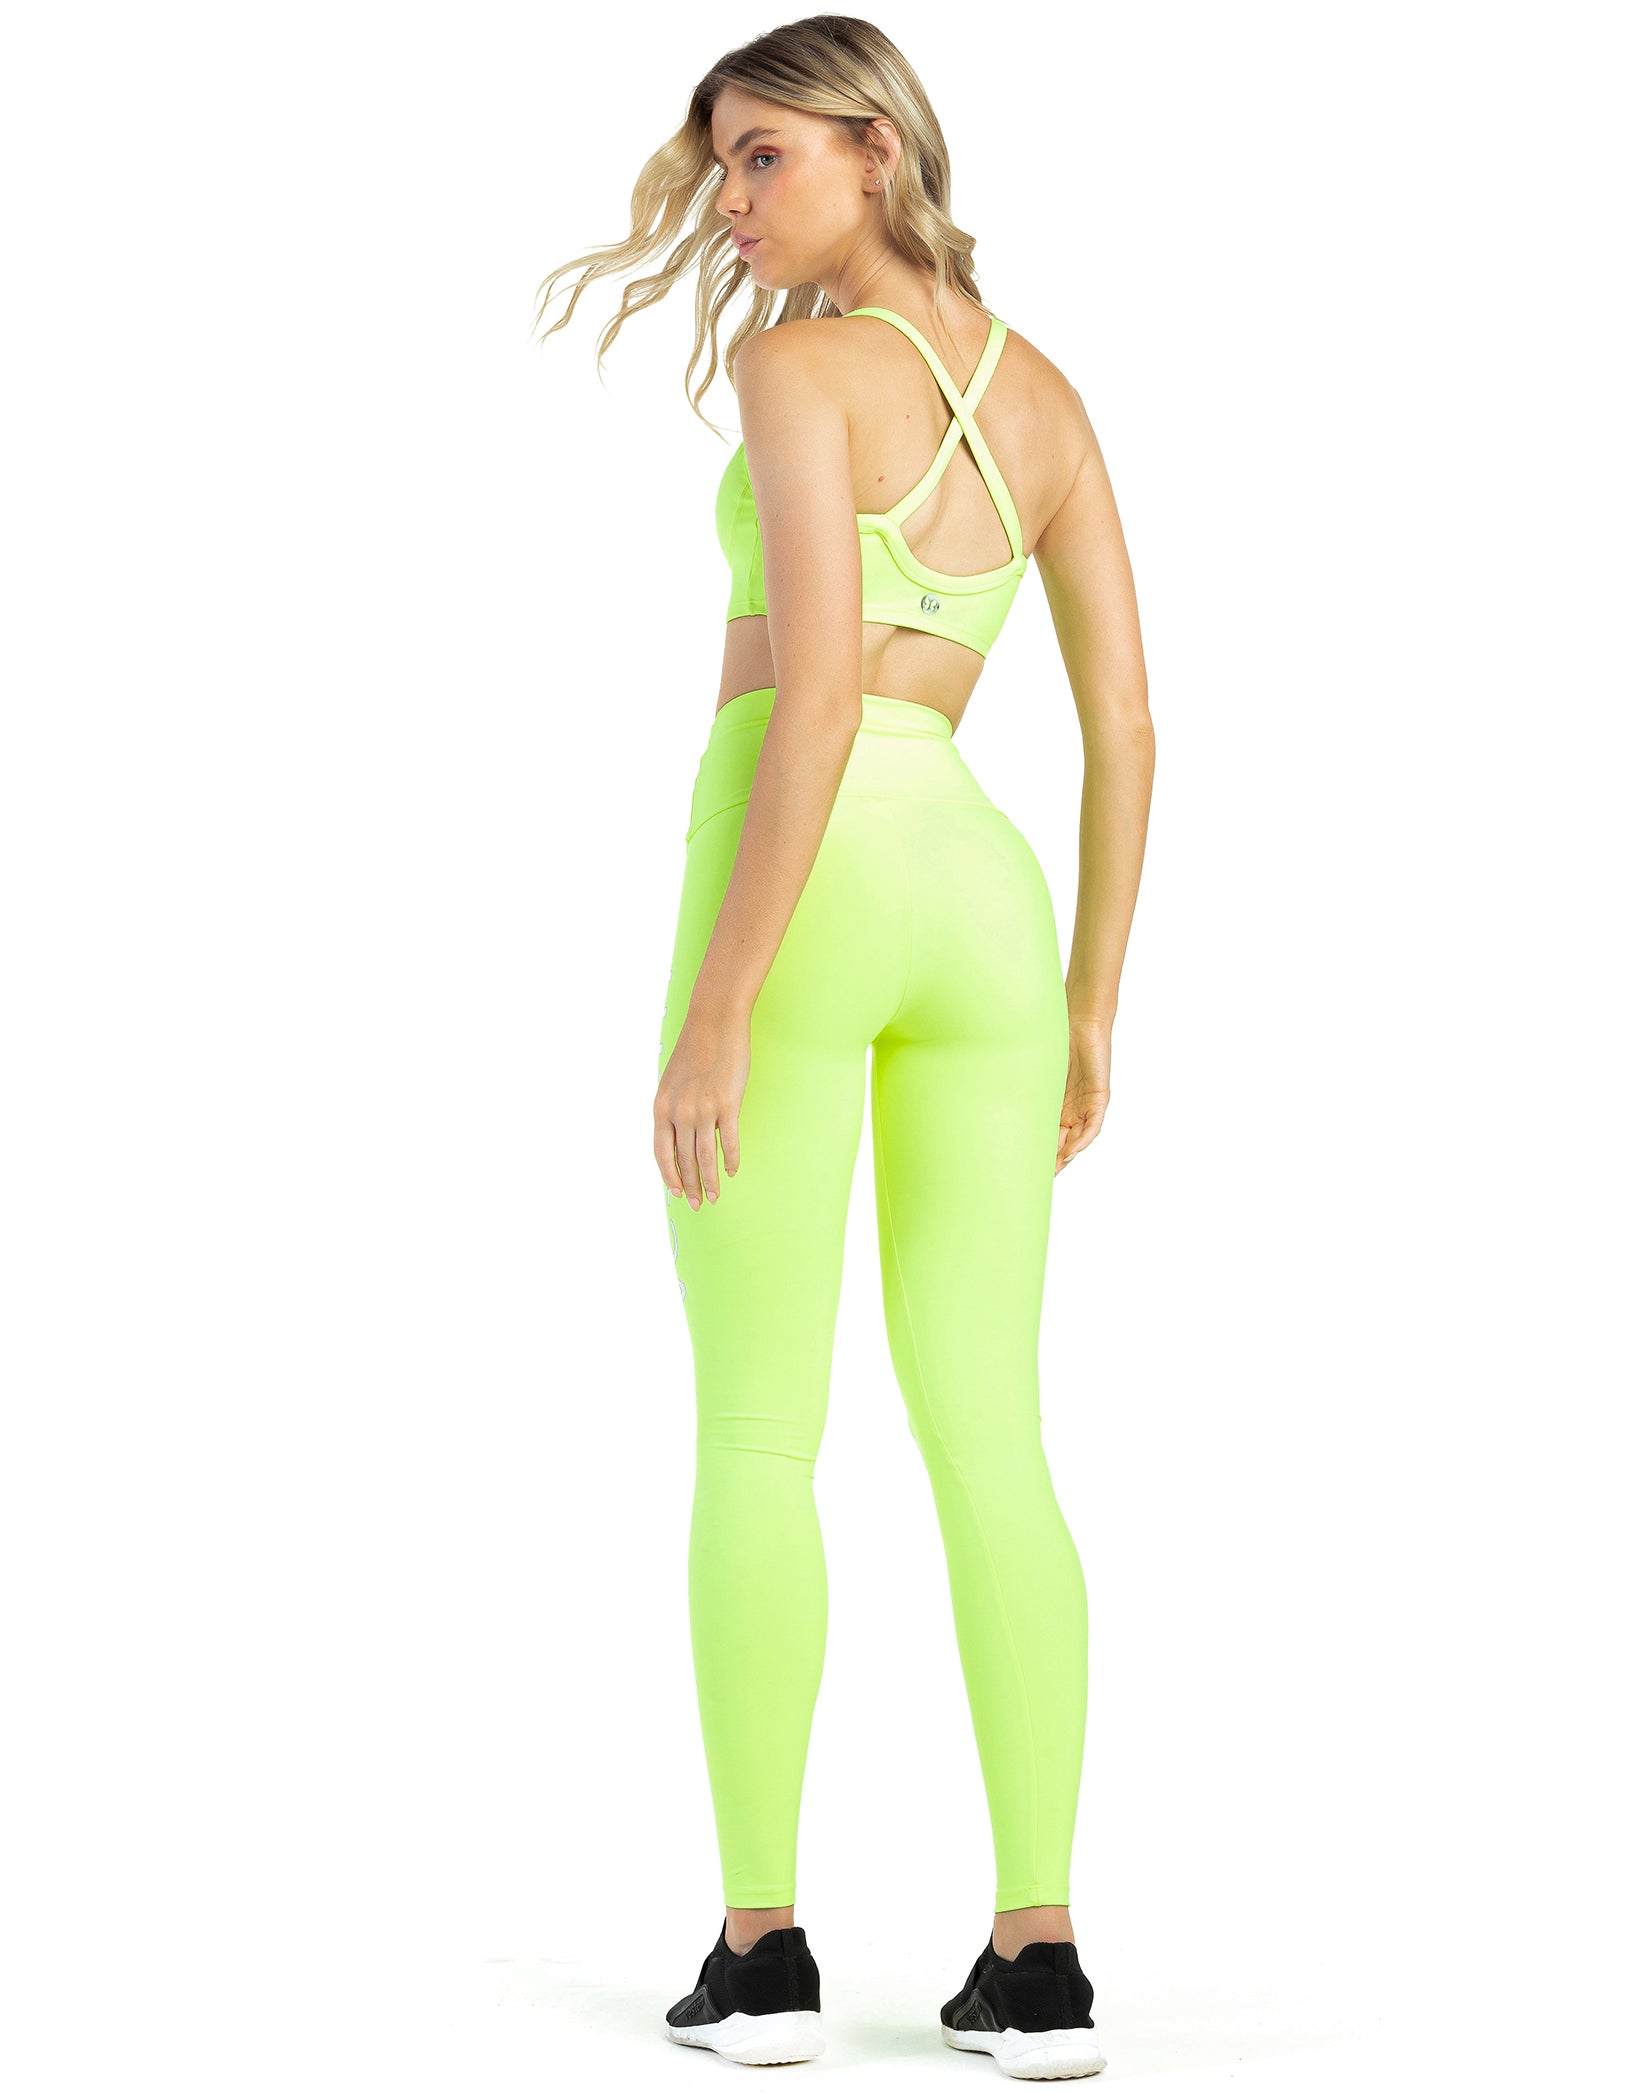 Vestem - Leggingss legging Buriti Yellow Neon - FS856.C0009